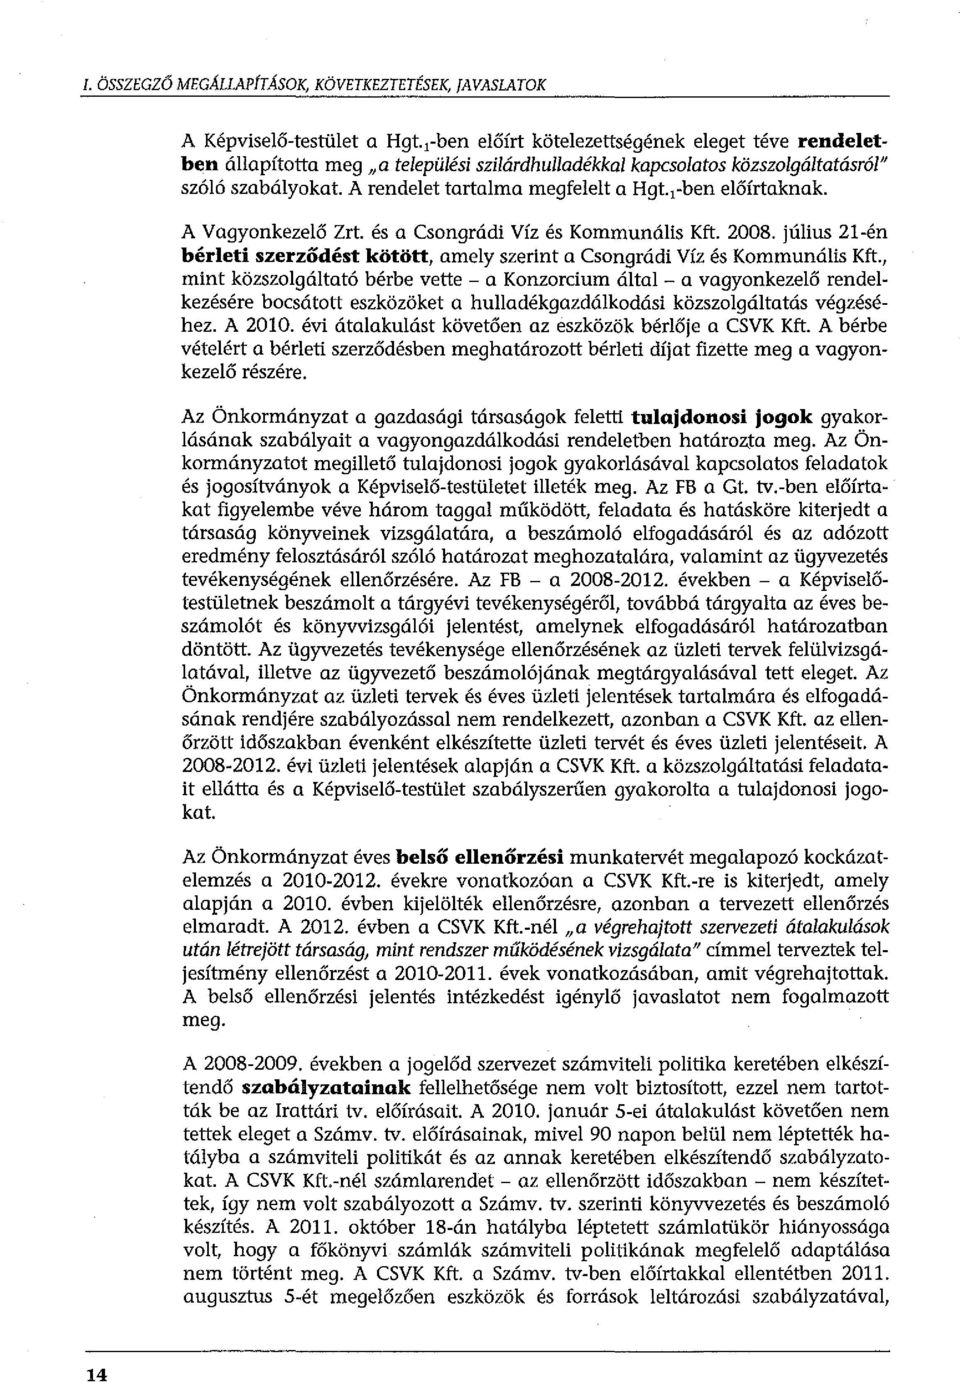 ,-ben előírtaknak. A Vagyonkezelő Zrt. és a Csongrádi Víz és Kommunális Kft. 2008. július 21-én bérleti szerződést kötött, amely szerint a Csongrádi Víz és Kommunális Kft.